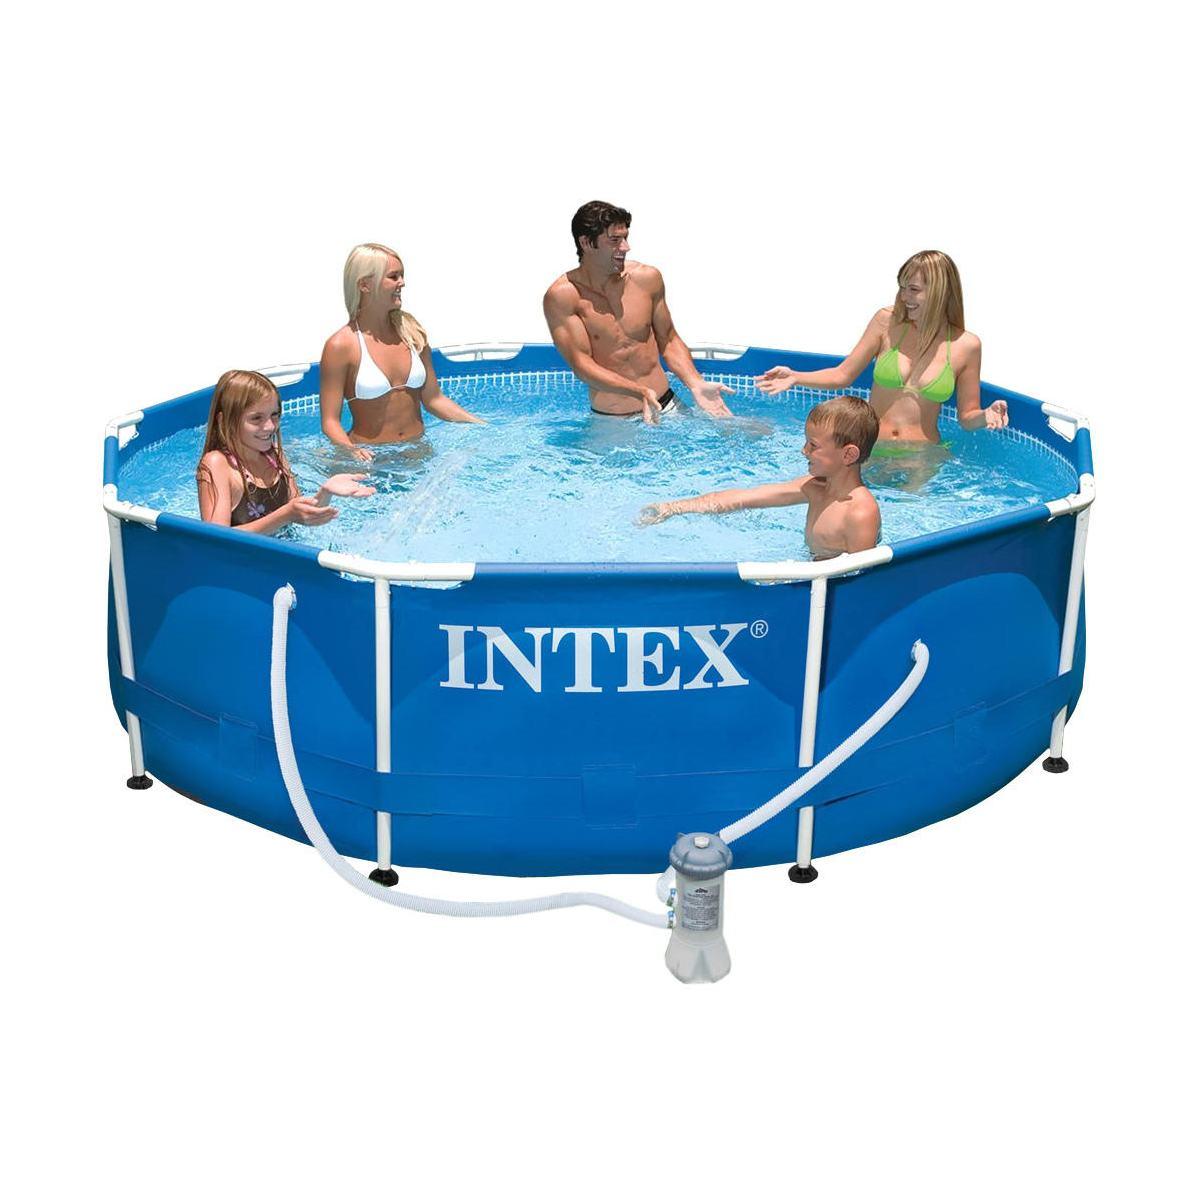 Intex 28202 piscina frame rotonda cm 305x76, pompa filtro